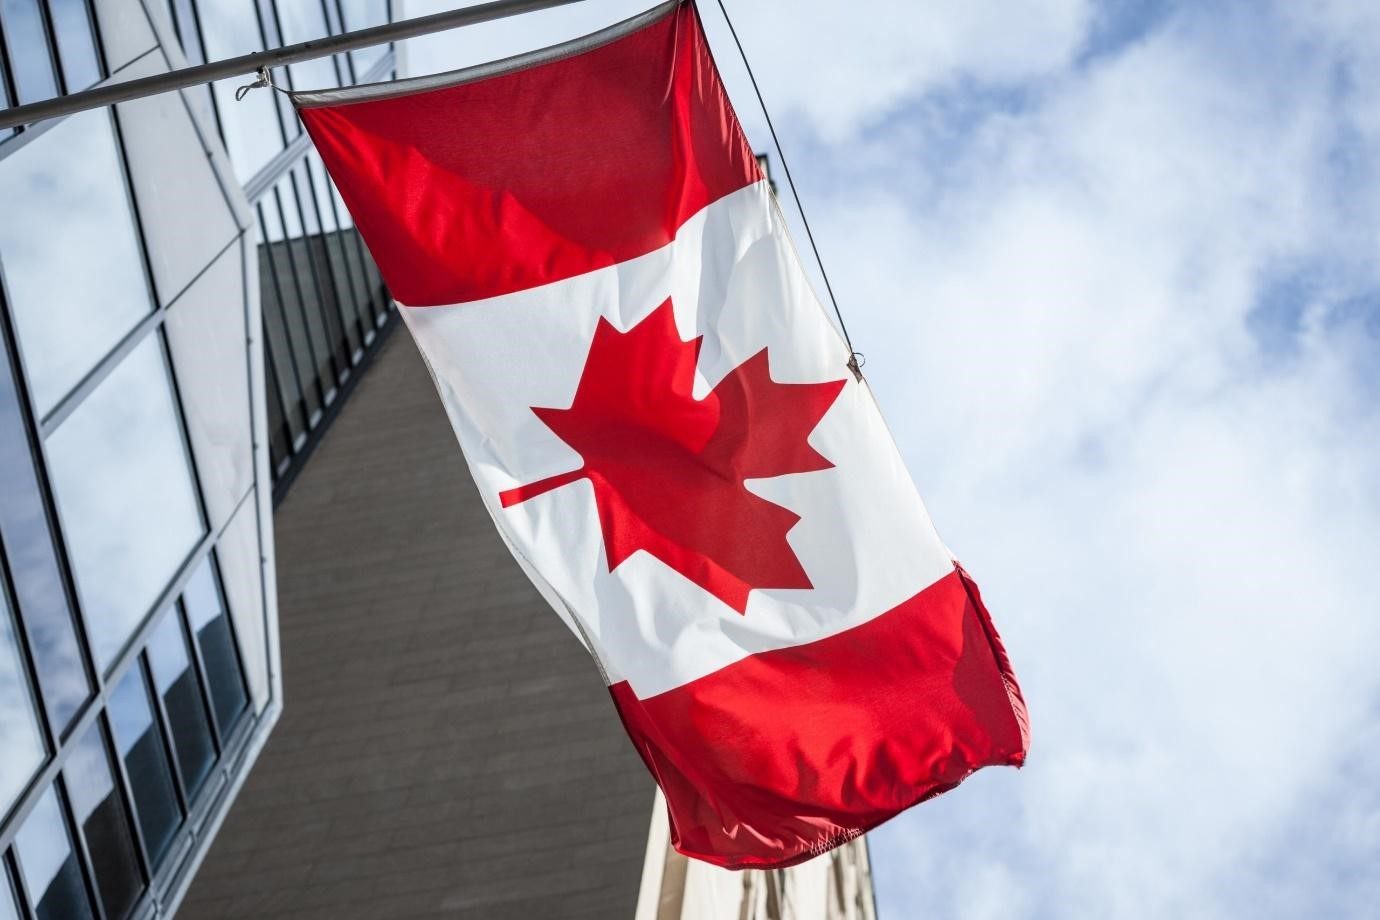 مدن كندية تطلب مهاجرين,برنامج express entry,الهجرة العائلية إلى كندا,كيف يمكنني الهجرة الى كندا,برامج الهجرة إلى كندا,هجرة إلى كندا,أفضل مكاتب الهجرة إلى كندا,أنواع الهجرة إلى كندا,وزارة الهجرة الكندية,موقع الهجرة الكندية,وزارة الهجرة الكندية الموقع الرسمي,التقديم للهجرة الى كندا,الفيزا إلى كندا,التسجيل في قرعة كندا 2023,التسجيل في قرعة كندا 2024,تقديم طلب هجرة إلى كندا اون لاين,اريد الهجرة إلى كندا مع عائلتي,موقع الهجرة إلى كندا,الموقع الرسمي للتسجيل في الهجرة إلى كندا,الهجرة إلى كندا 2023,الهجرة إلى كندا 2024,اريد الهجرة إلى كندا مجانا,كندا,الاقامة في كندا,تكلفة الهجرة إلى كندا,تكلفة المعيشة في كندا,اللجوء إلى كندا,اللجوء لكندا,السفر لكندا,المعيشة في كندا,الفيزا لكندا,سعر الفيزا لكندا,العيش في كندا,فيزة كندا,الهجرة إلى كندا,شروط الهجرة إلى كندا